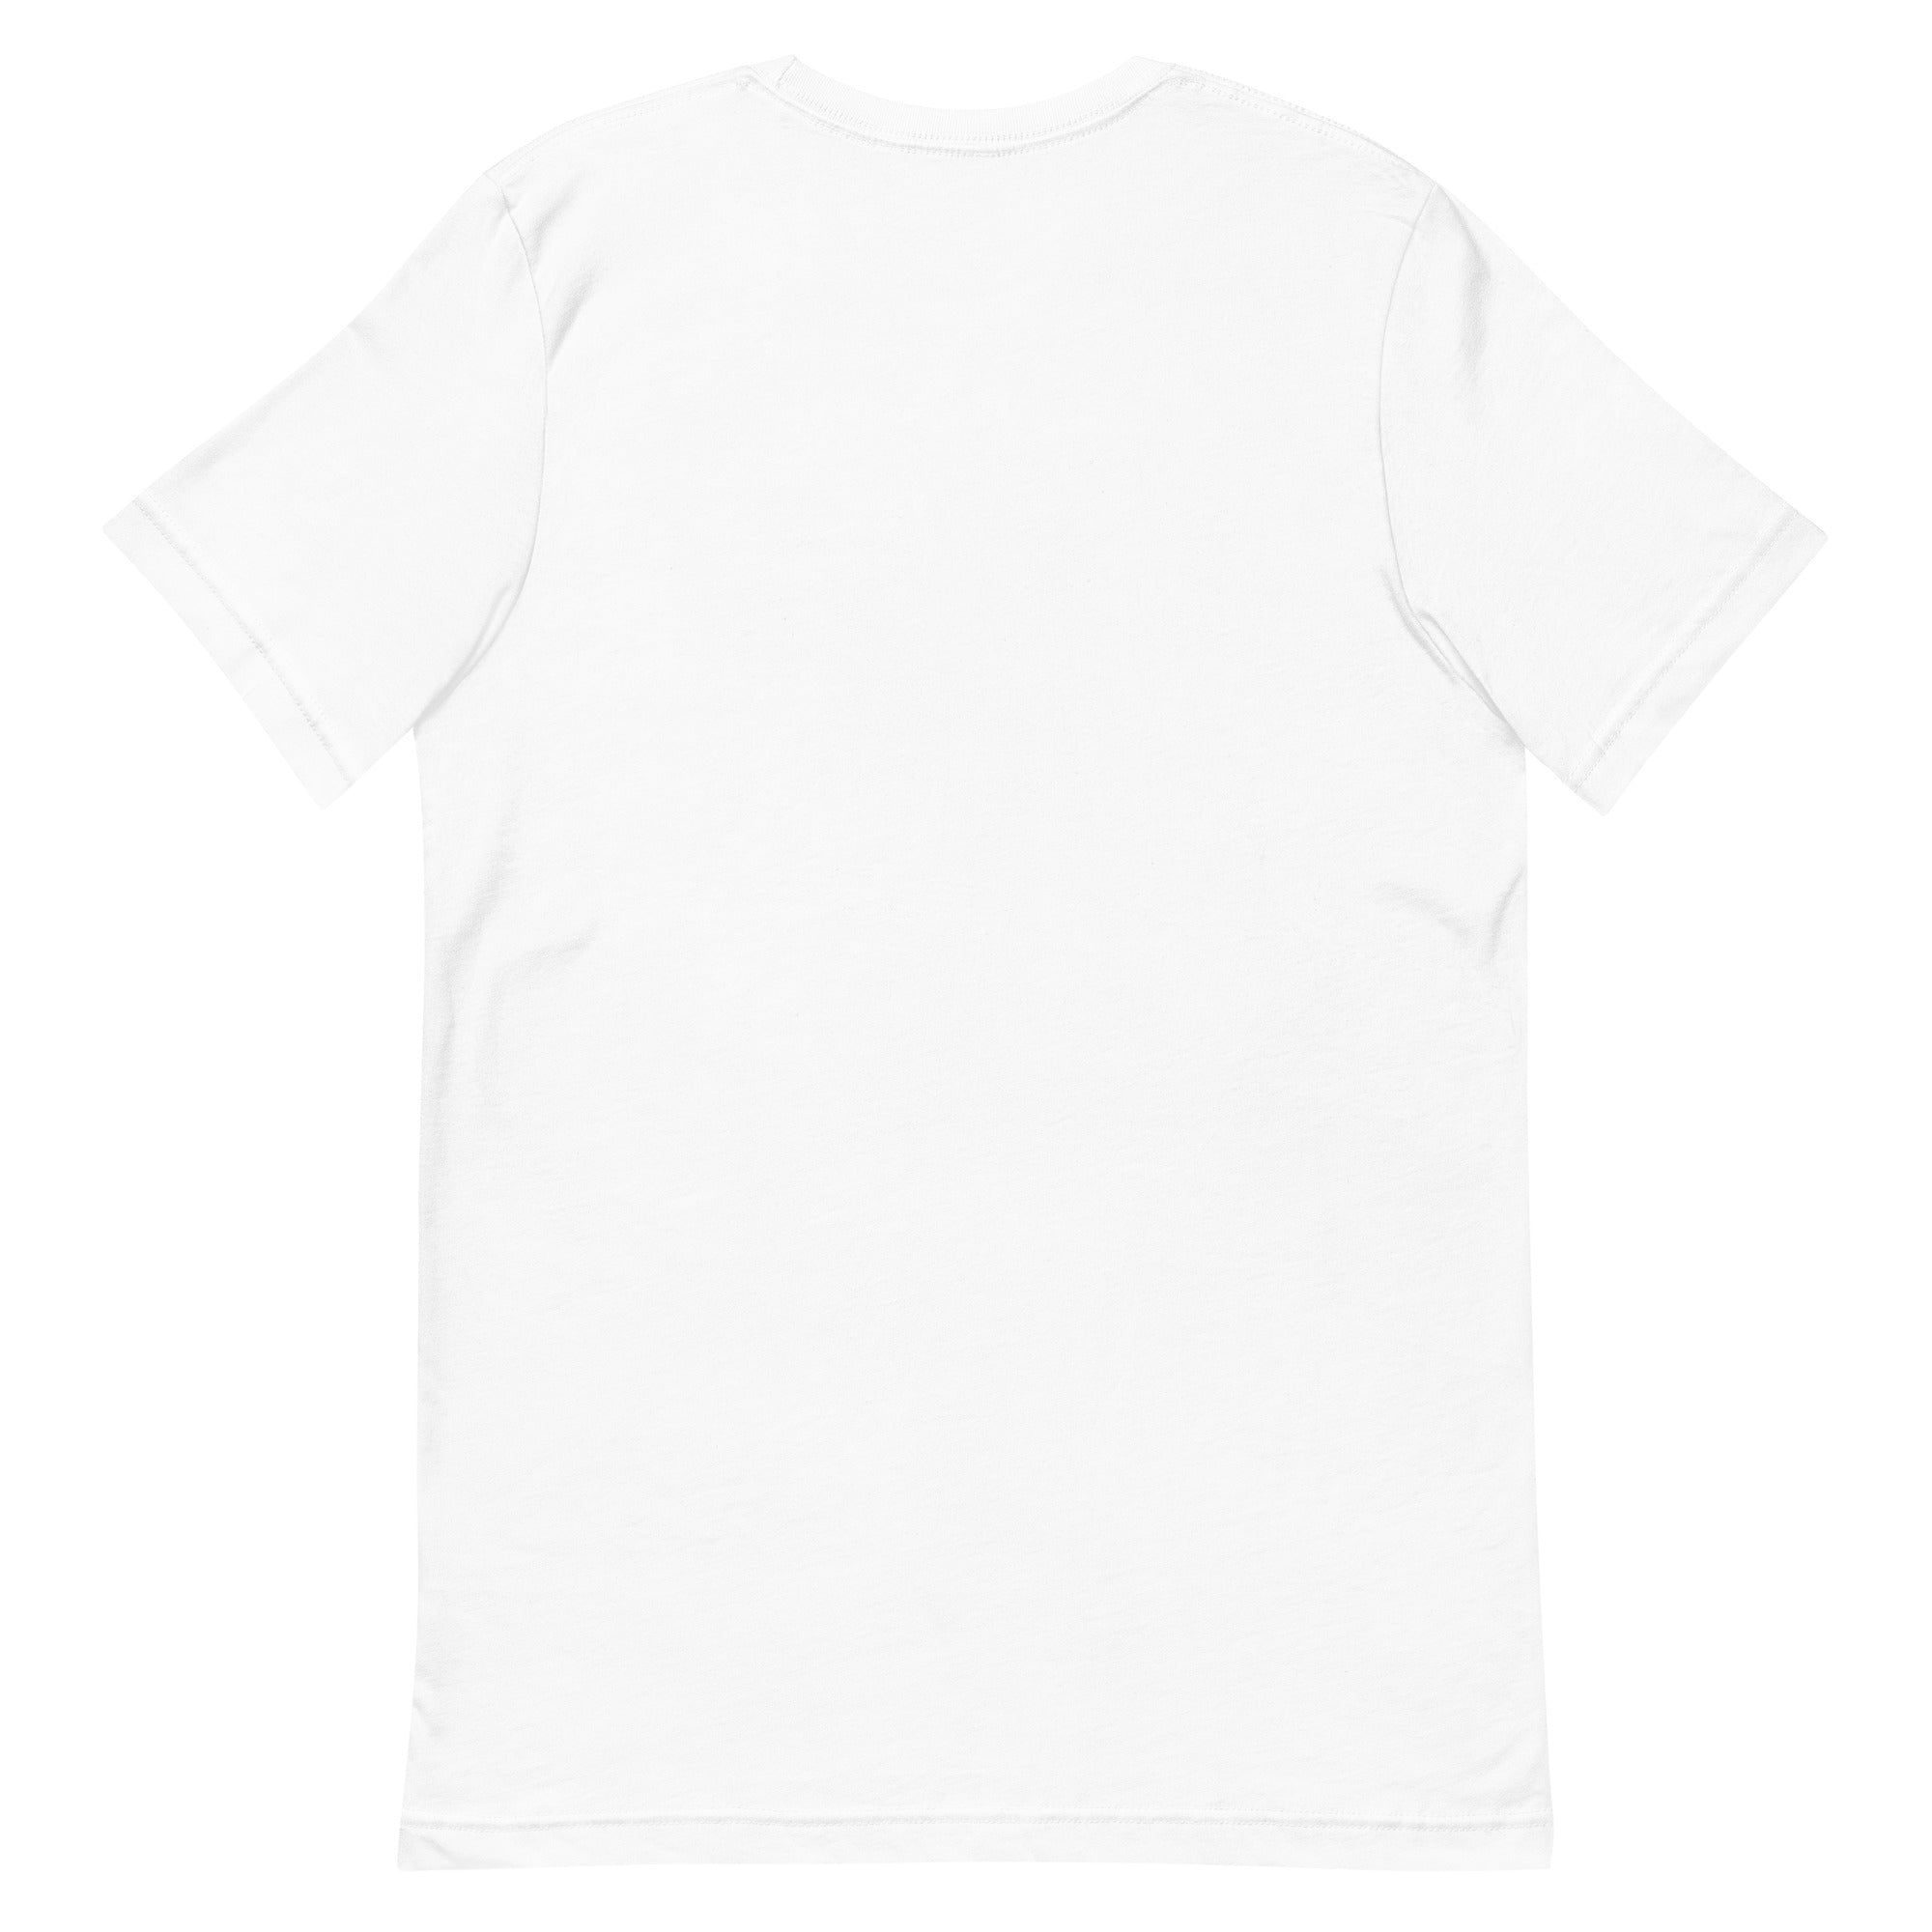 savar-mens-play-boy-white-t-shirt-st209-100